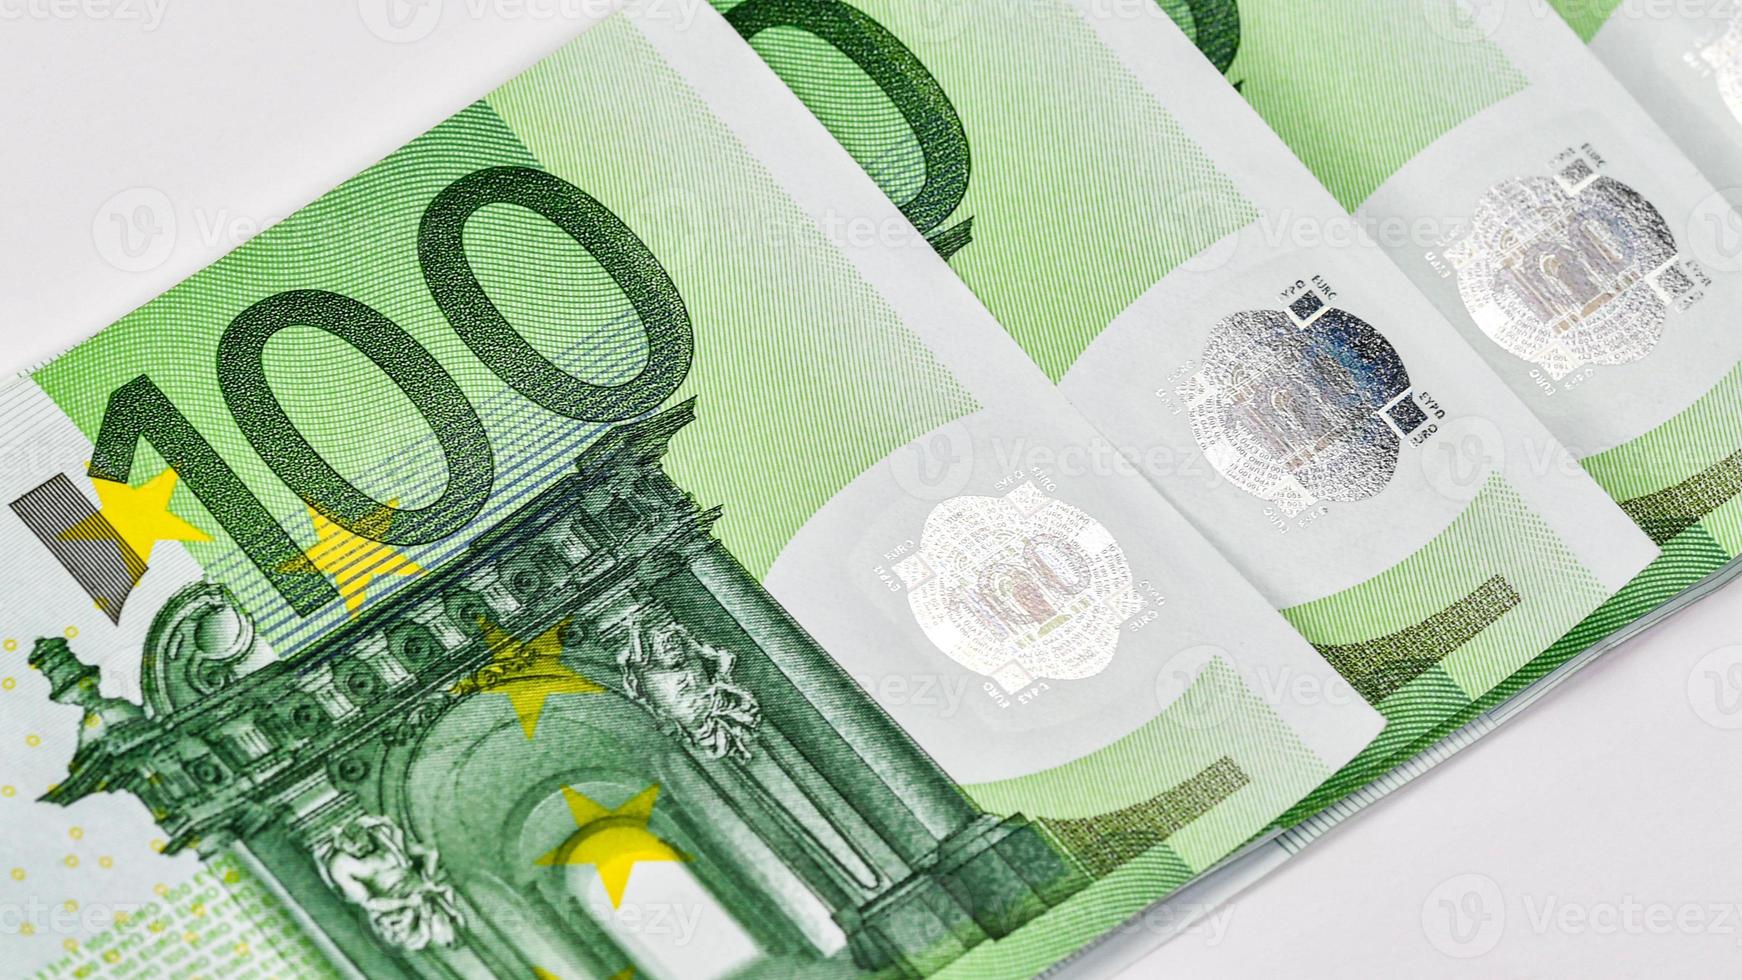 Detail einer 100-Euro-Banknote foto